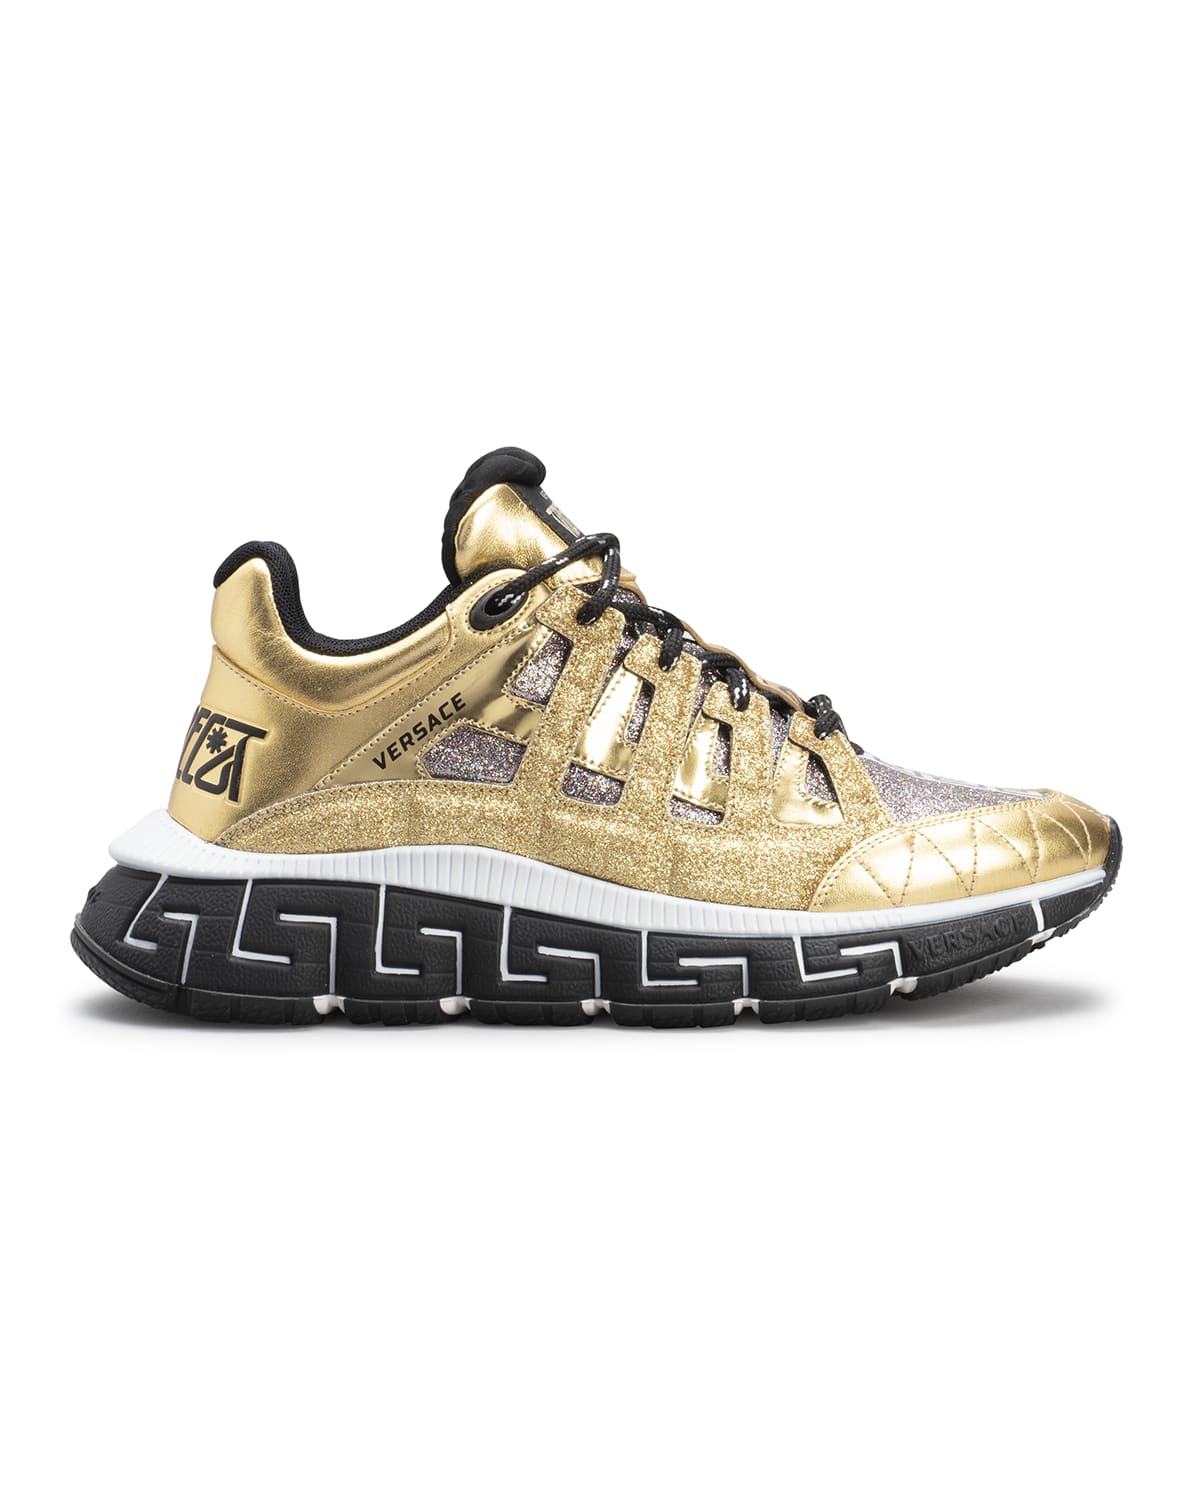 Versace Trigreca Metallic Fashion Trainer Sneakers In Gold Multicolor ...